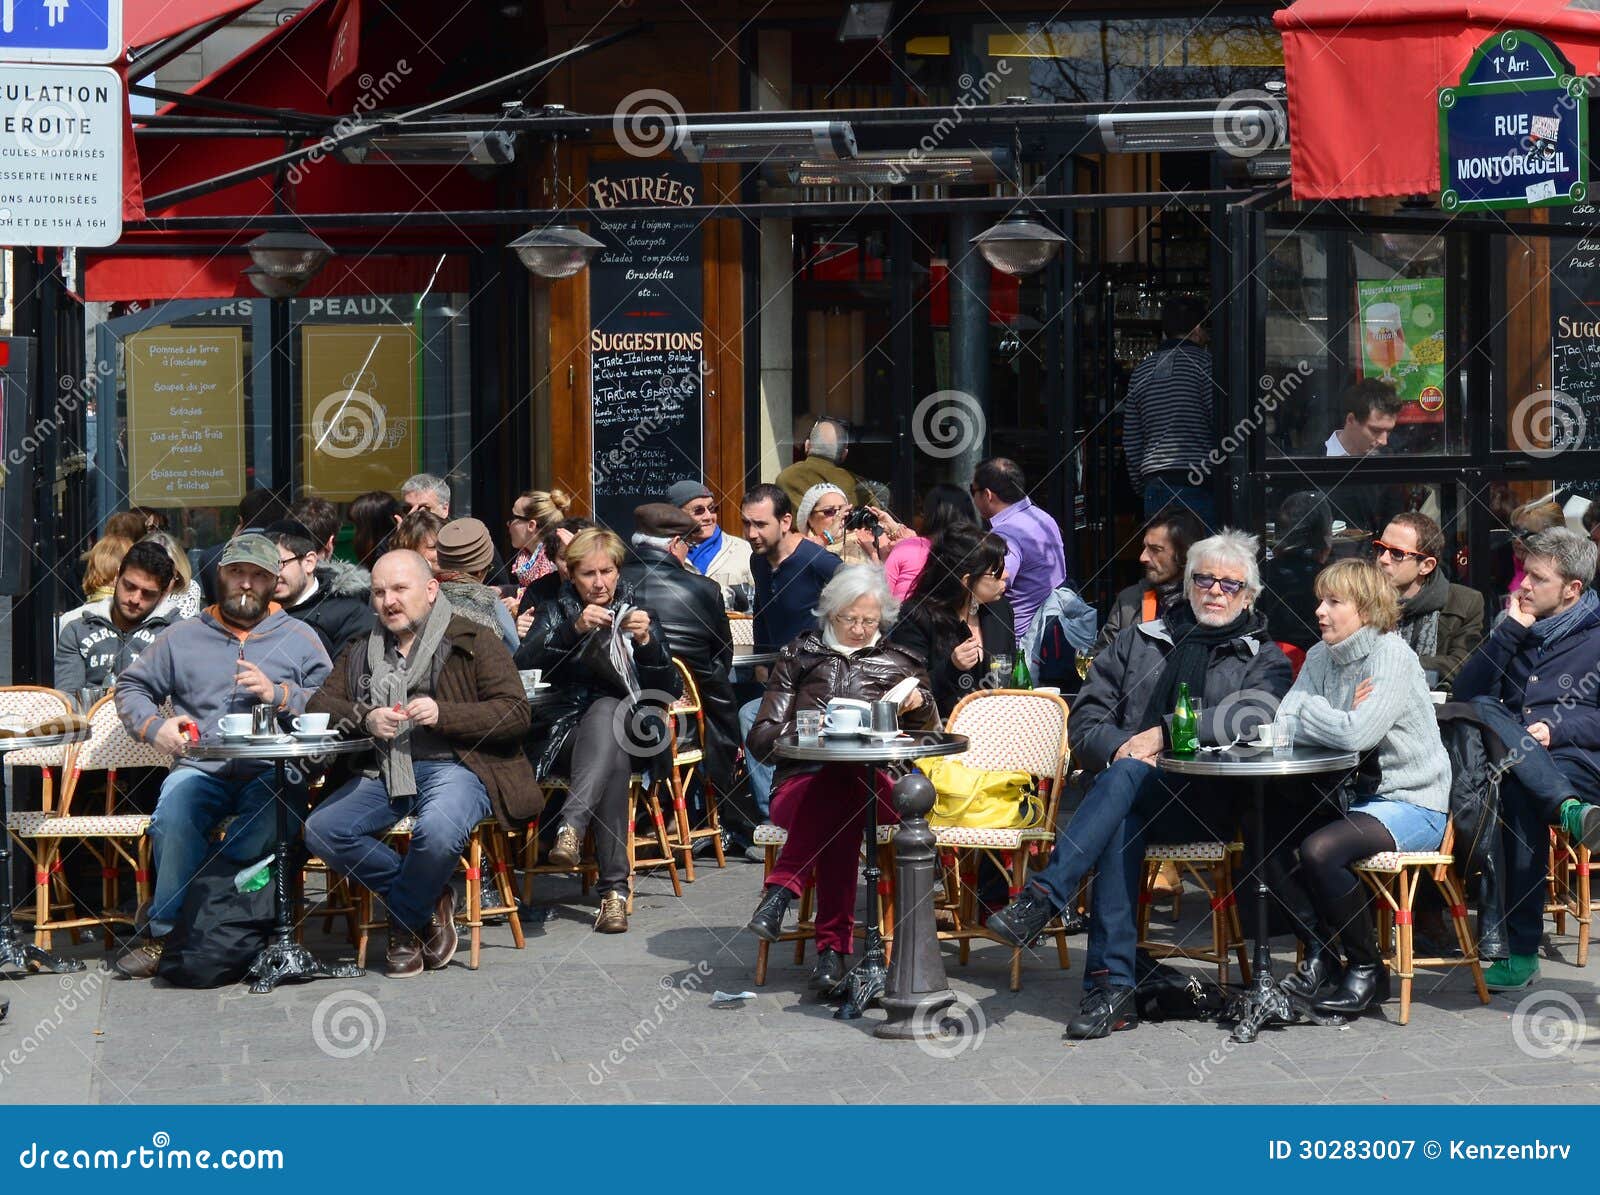 Topic des bonnes nouvelles - Page 3 Terrasse-classiquement-parisienne-de-café-paris-france-30283007